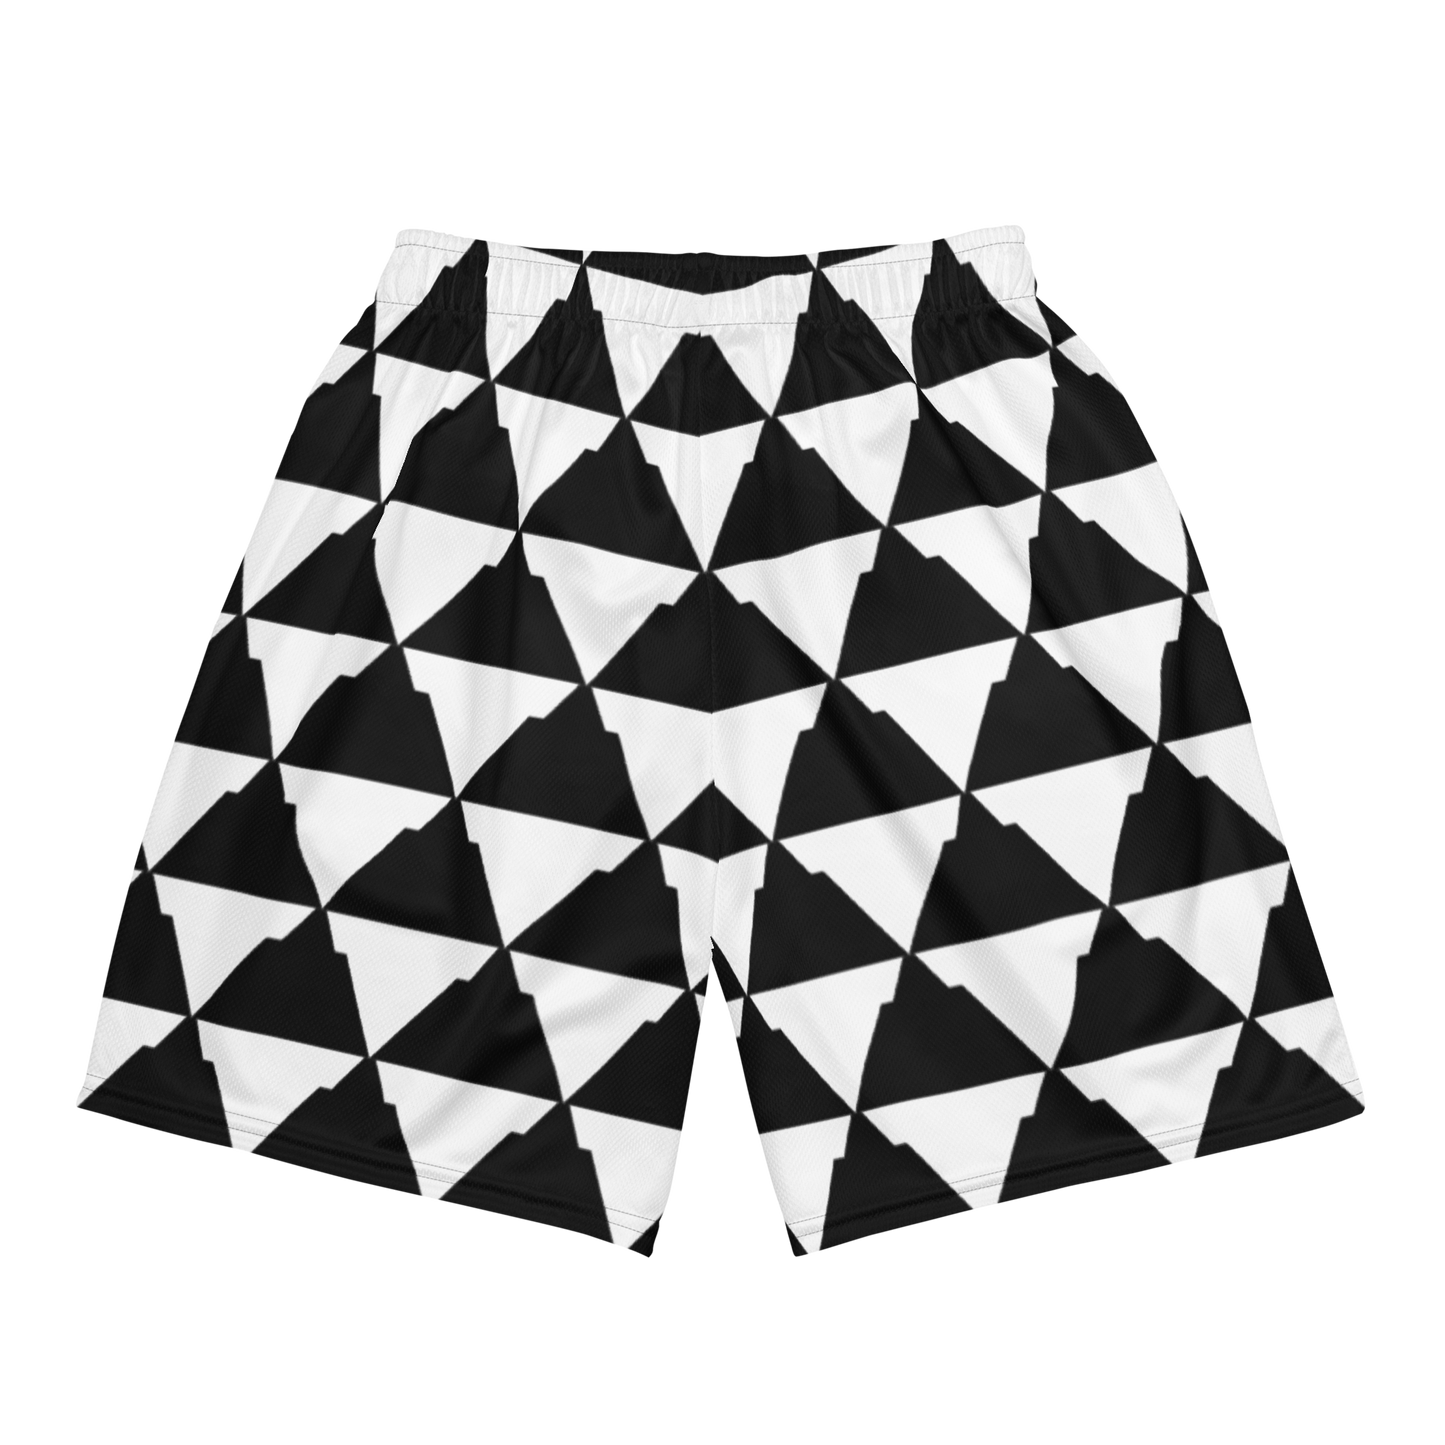 Pyramid Pattern Mesh Shorts